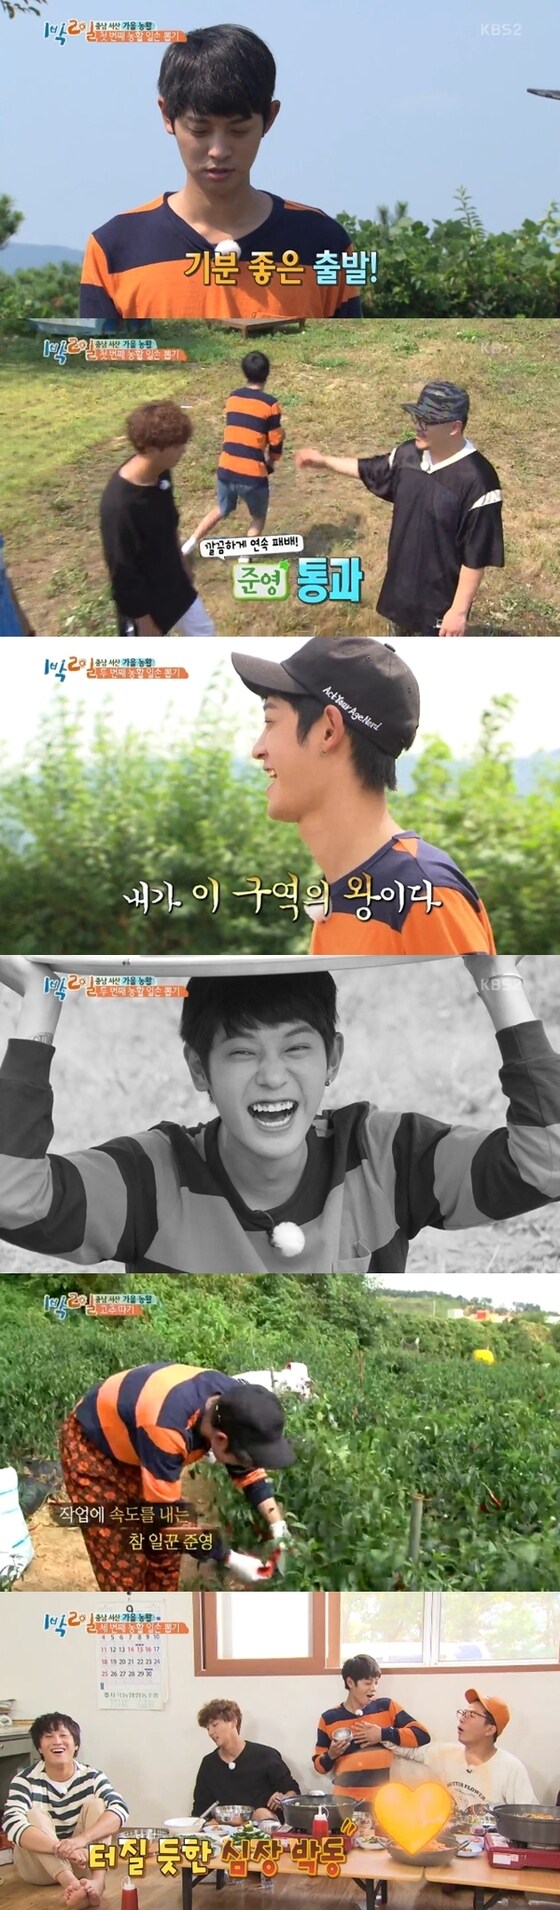 25일 방송된 '1박2일'에서는 서산에서 벌어진 농촌 일손 돕기 모습이 공개됐다. © News1star / KBS2 '1박2일' 캡처